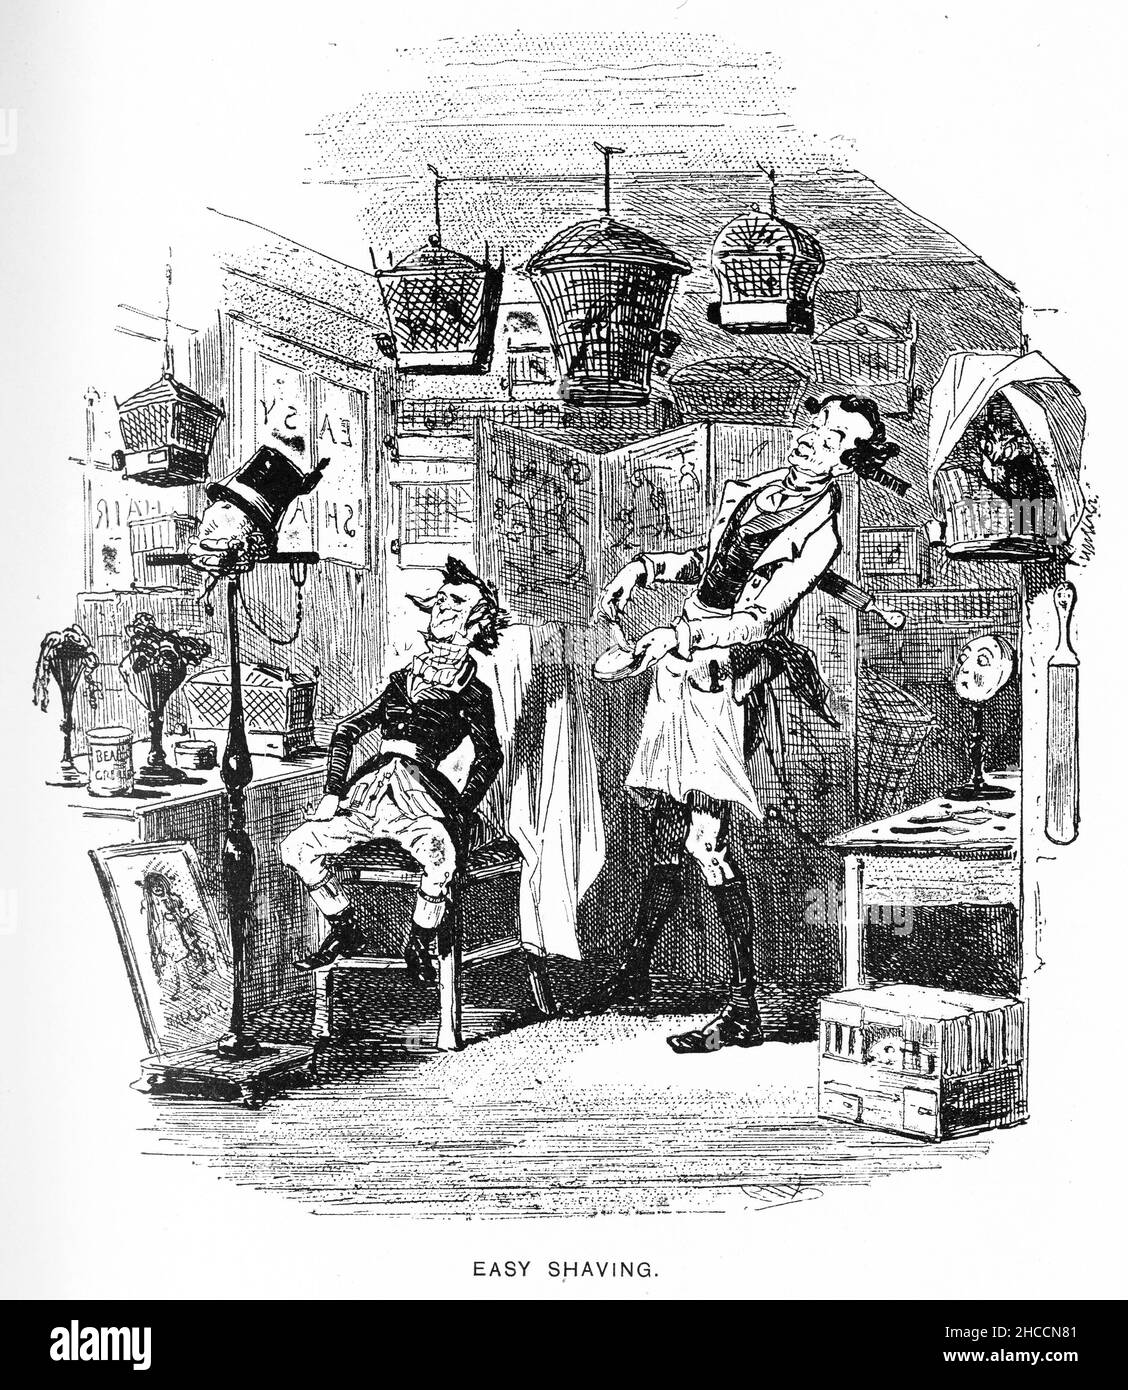 Gravur eines Barbiers bei der Arbeit bei Easy Shaving, einer Szene aus einem viktorianischen Buch von Charles Dickens, veröffentlicht um 1908. Beachten Sie die Reflexion im Spiegel rechts. Stockfoto